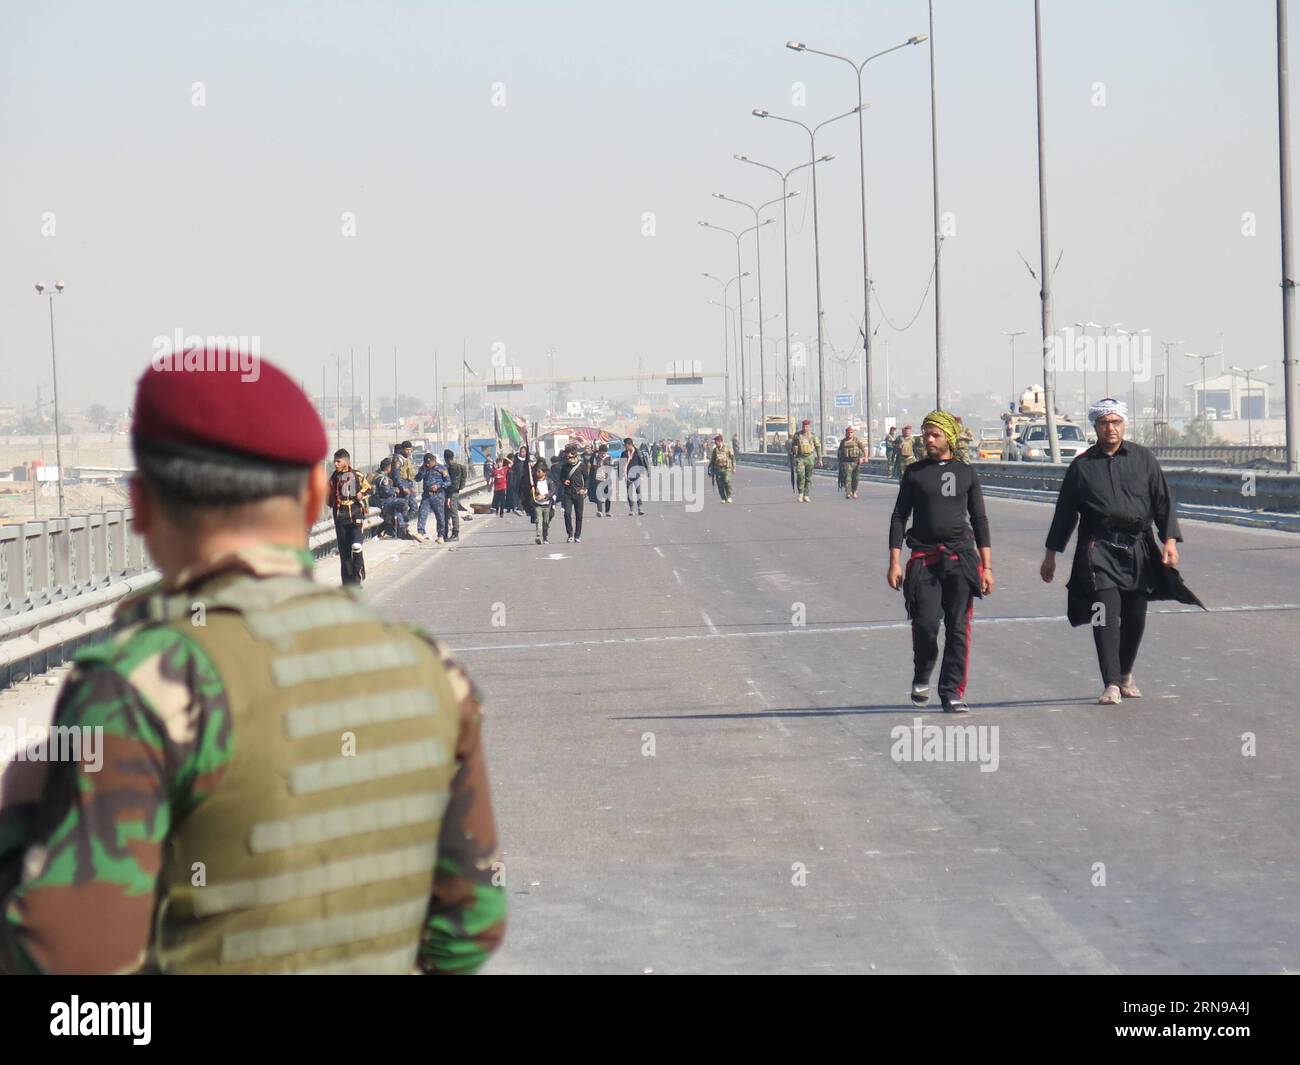 (151125) - BAGHDAD, 25 novembre 2015 -- i musulmani di Shiah iniziano a camminare verso il Karbala per commemorare l'anniversario dell'Imam Hussein a Baghdad, Iraq, il 25 novembre 2015. Milioni di lutto si sono riuniti nella Santa città irachena di Karbala per commemorare l'anniversario del martirio dell'Imam Hussein. IRAQ-BAGHDAD-IMAM HUSSAIN-COMMEMORAZIONE KhalilxDawood PUBLICATIONxNOTxINxCHN 151125 Baghdad Nov 25 2015 musulmani iniziano a camminare verso il Karbala per commemorare l'anniversario dell'Imam Hussein a Baghdad Iraq IL 25 2015 novembre milioni di Morne si sono riuniti nella città Santa di Karbala irachena per commemorare l'anniversario del martirio di Foto Stock